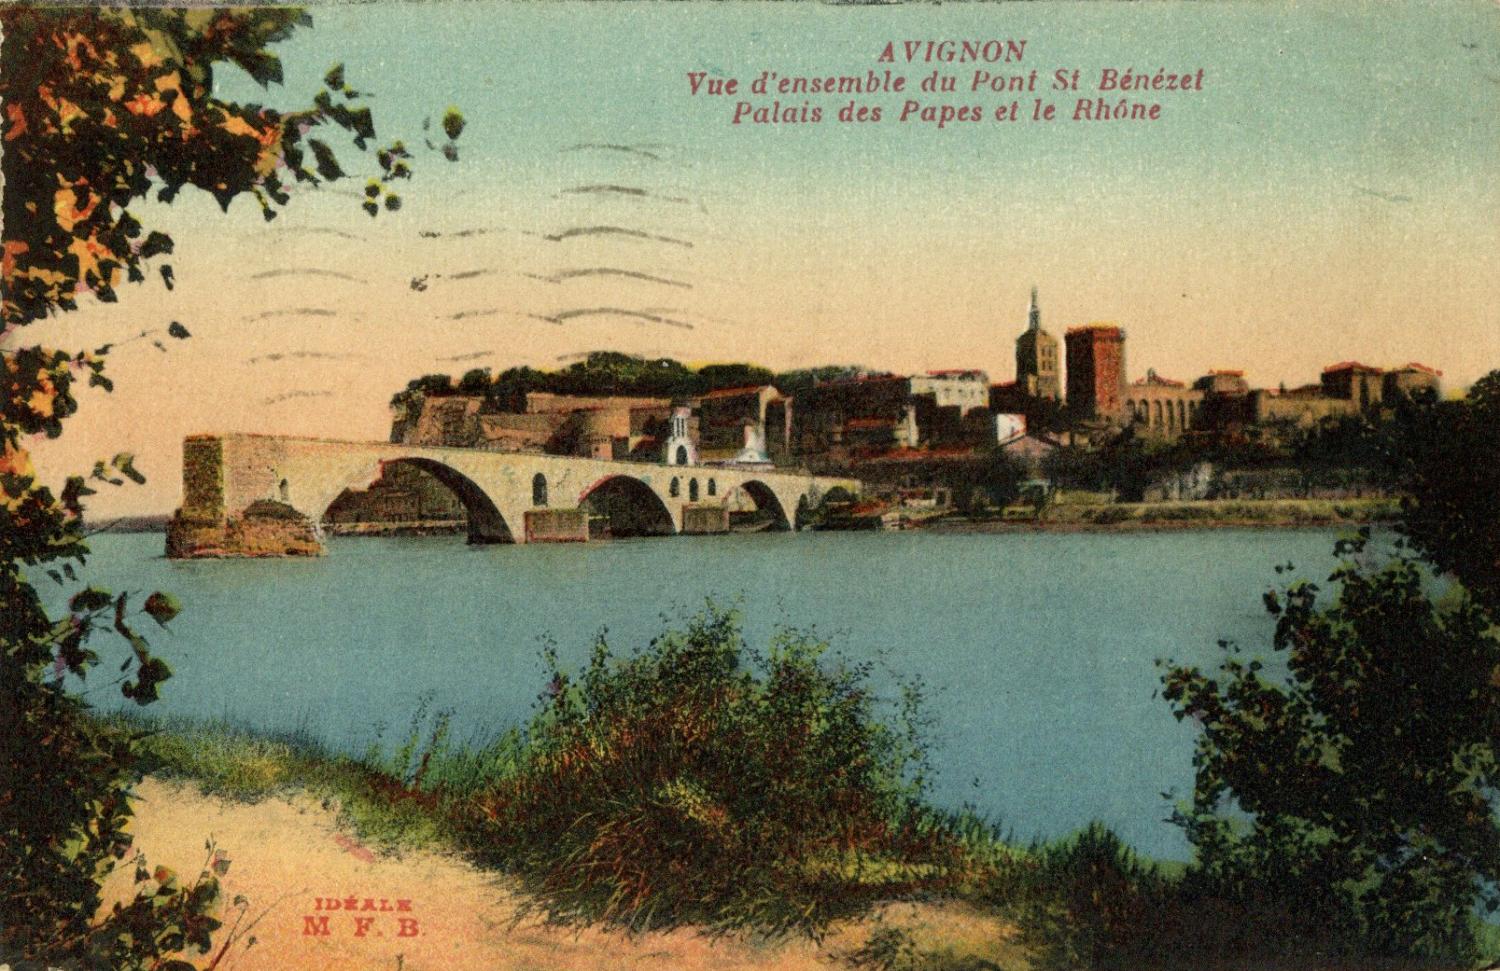 Avignon - Vue d'ensemble du Pont Saint-Bénézet, Palais des Papes et le Rhône.